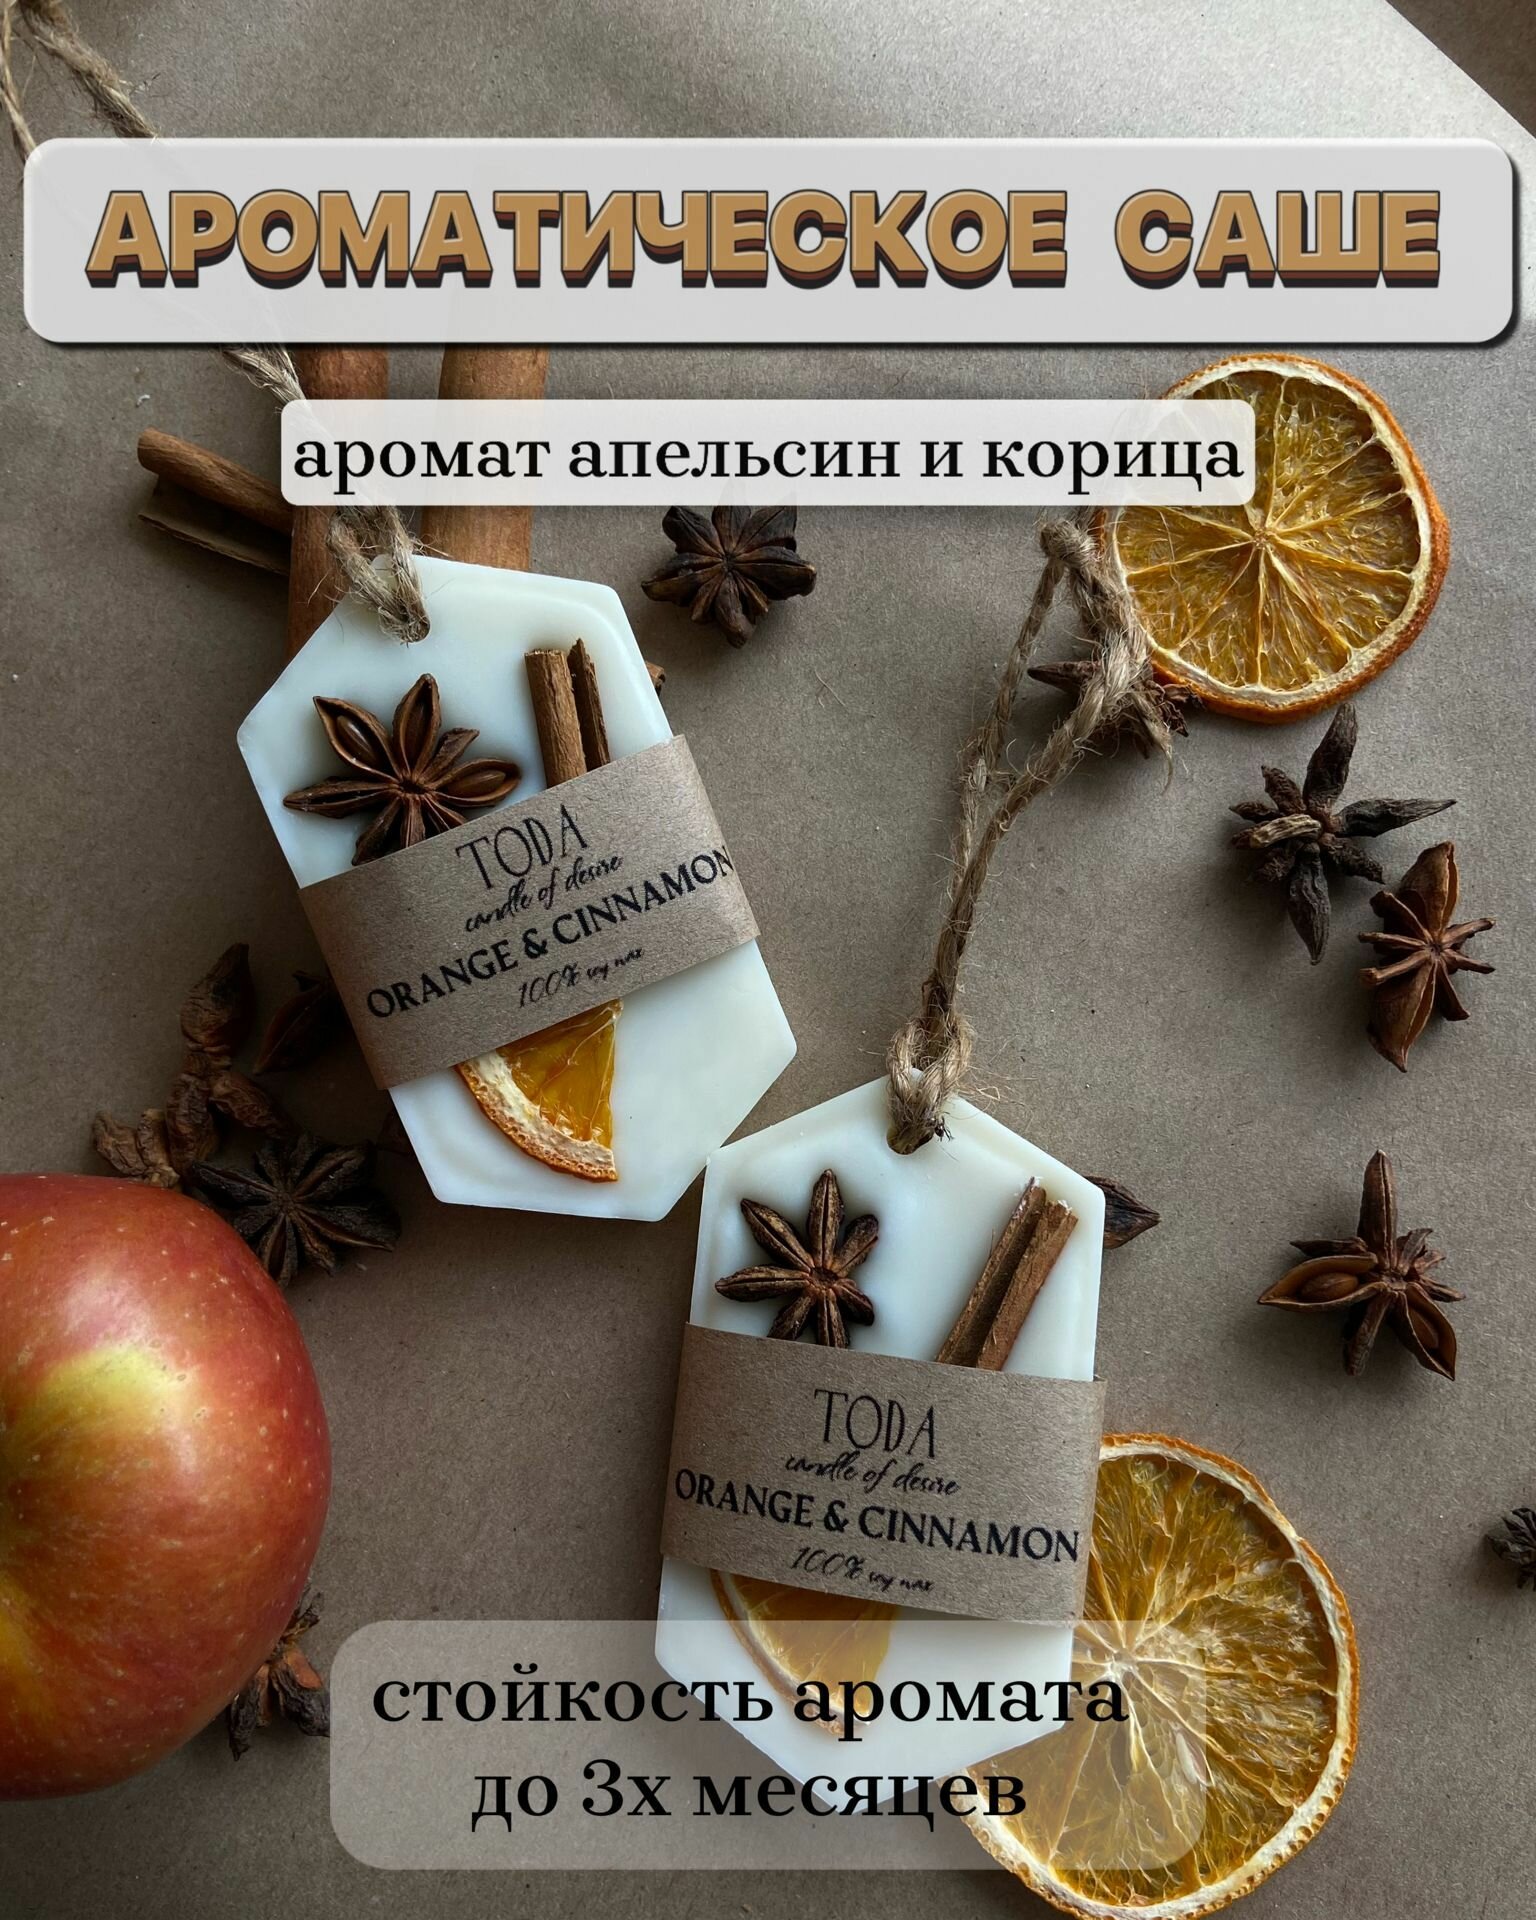 Набор из 2х ароматических саше для дома с ароматом Апельсин и Корица, подарочный набор, флорентийское саше